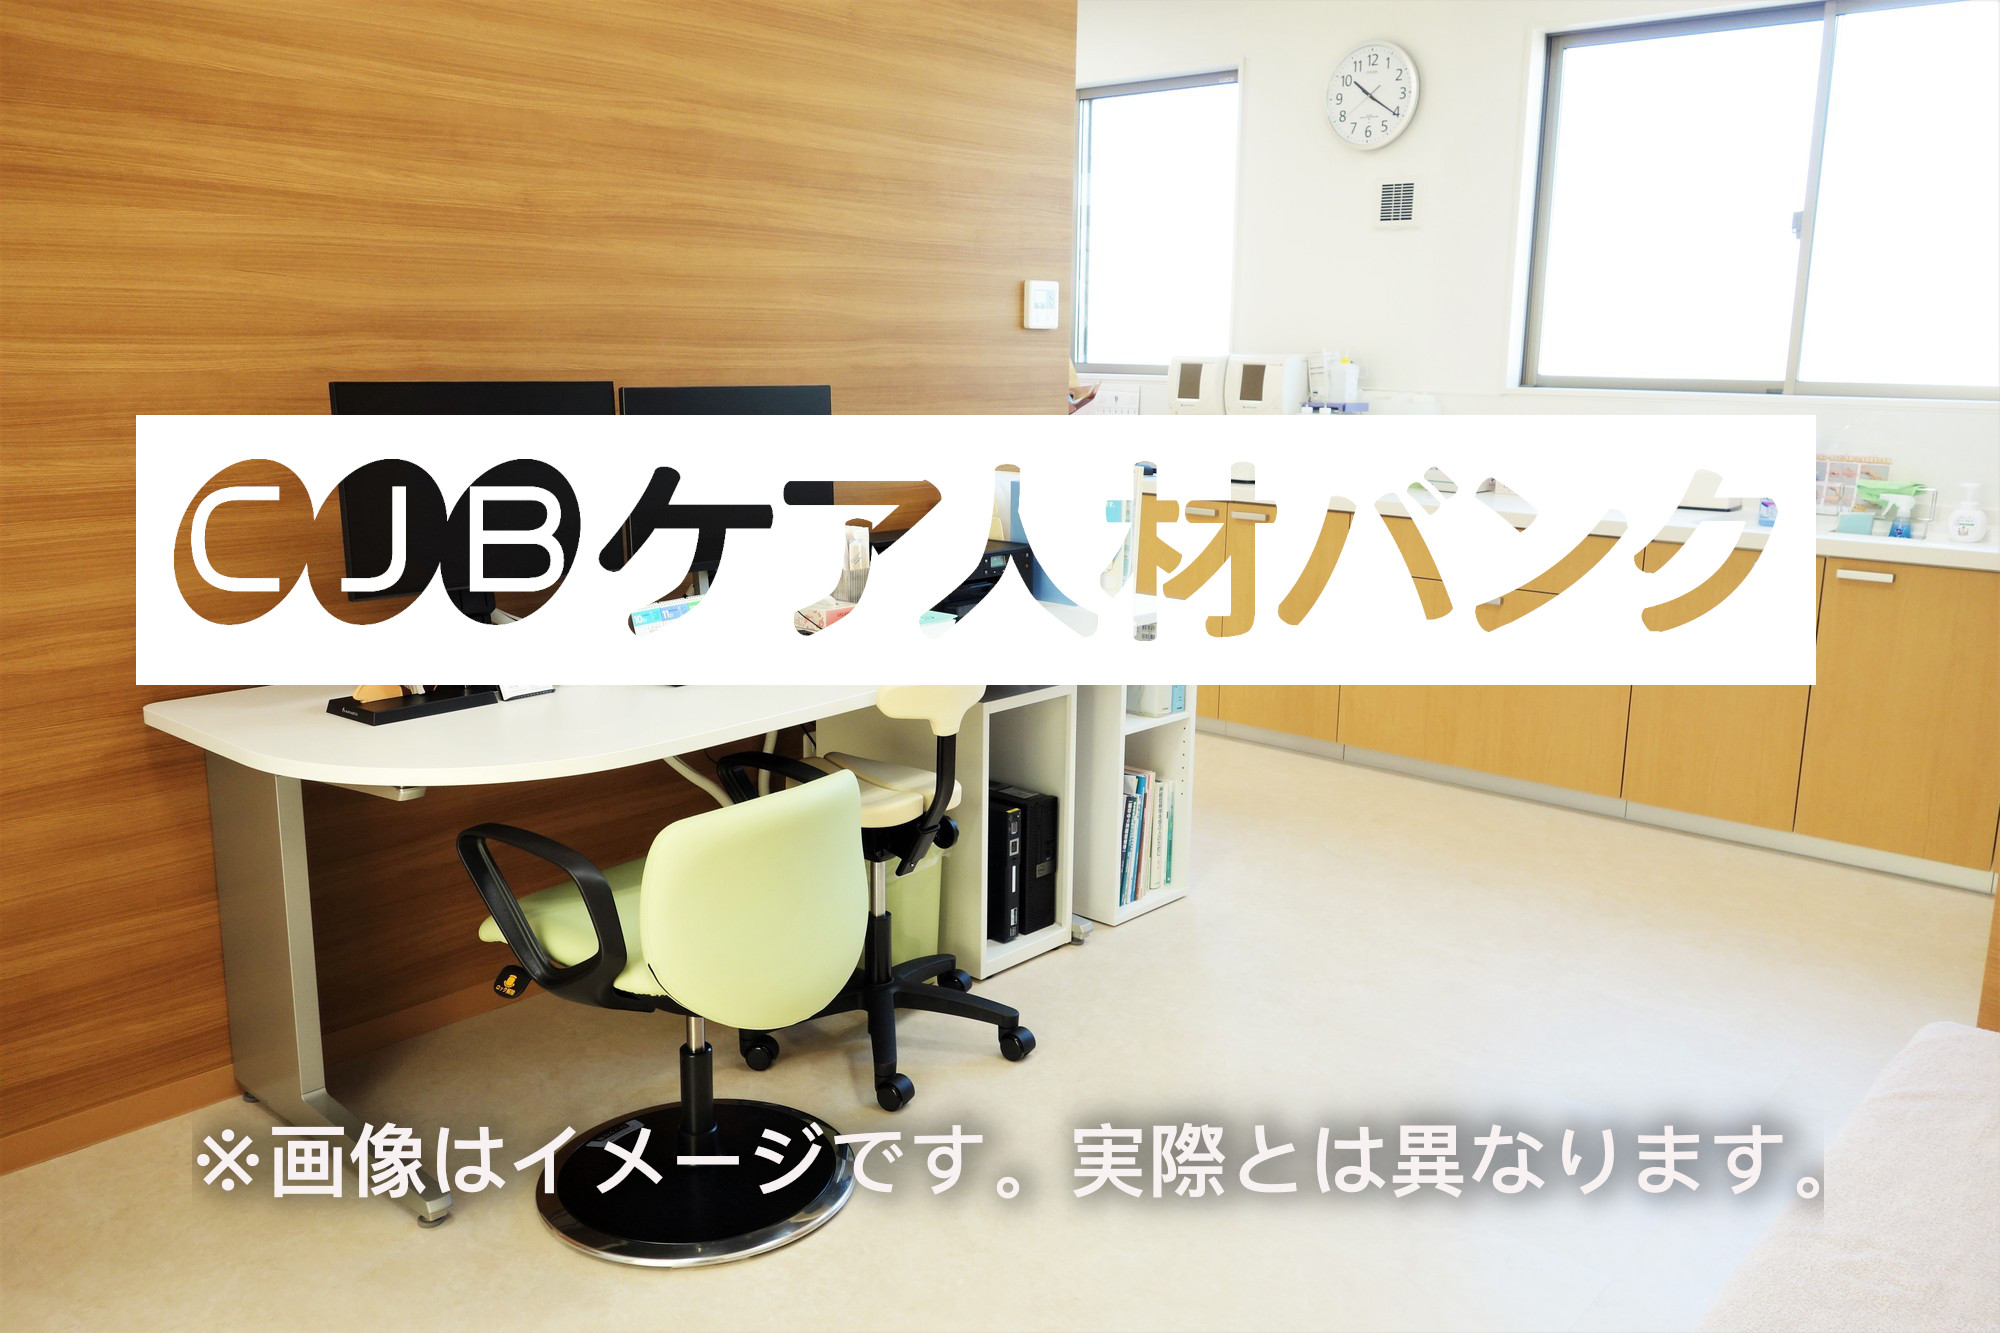 吉田記念病院 のイメージ画像